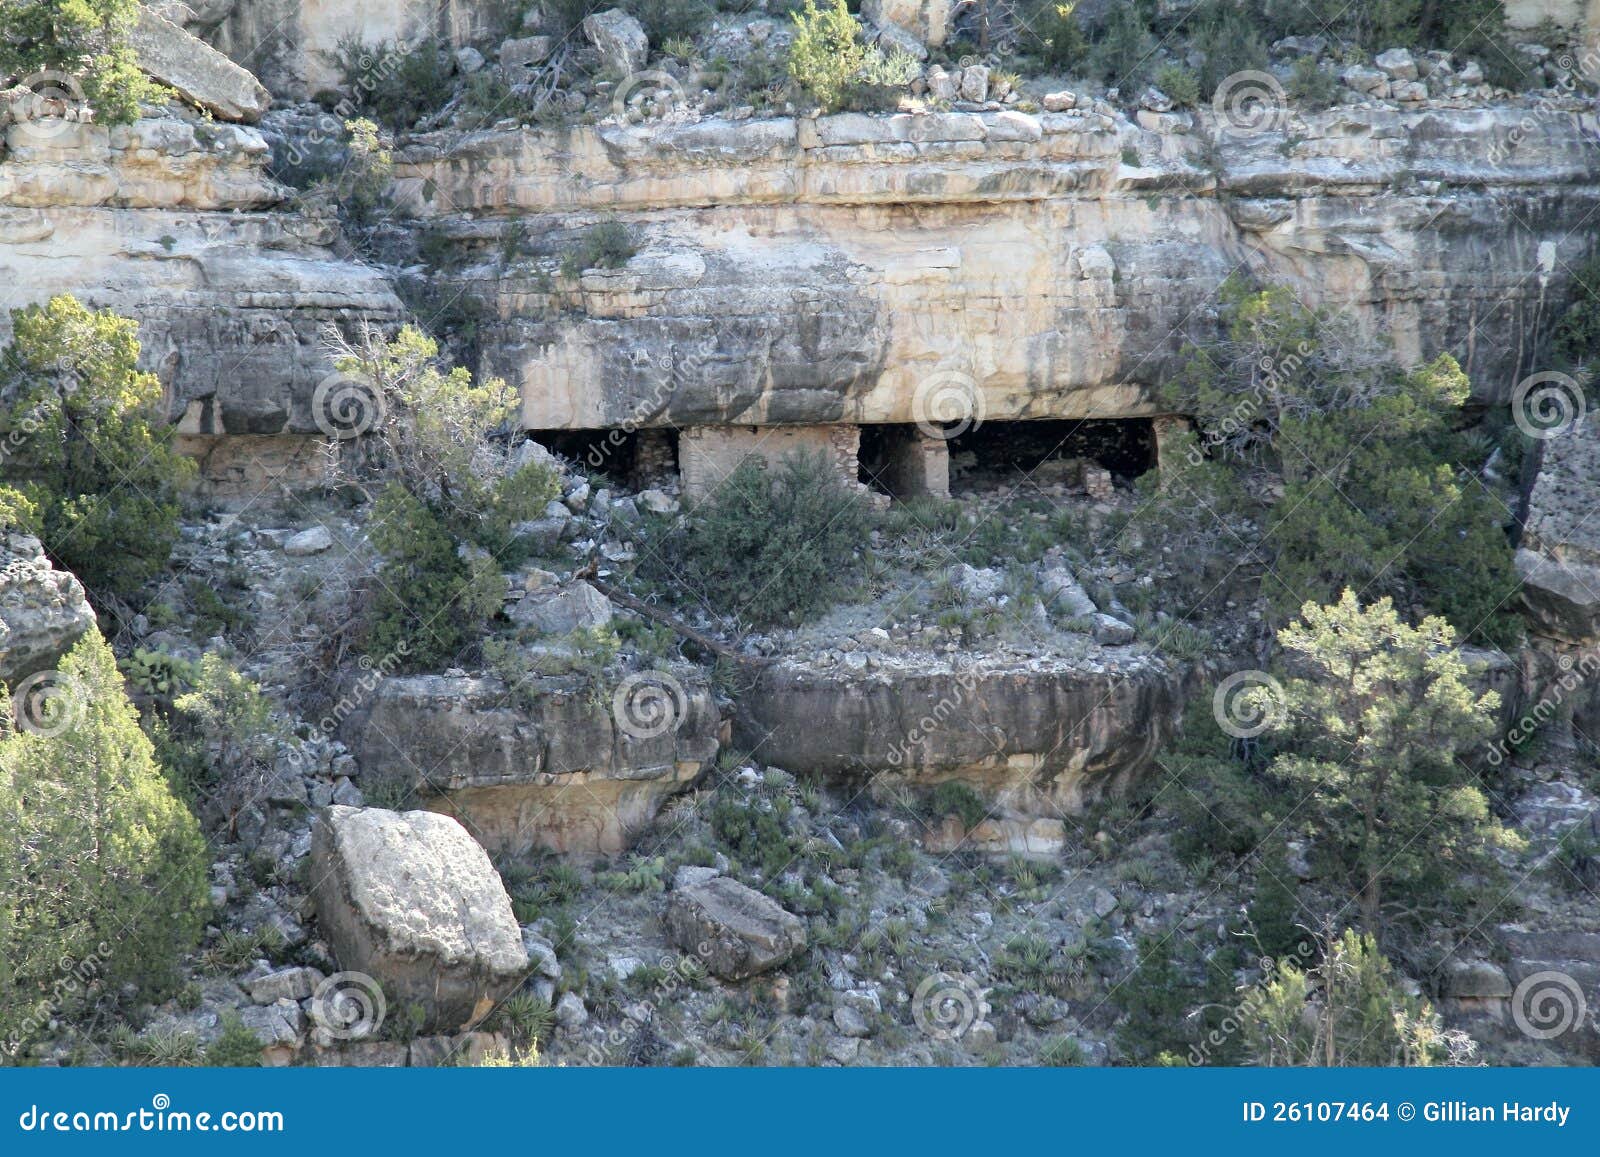 Klippen-Haus. Eingelassene Walnuss-Schlucht, Arizona, USA, nahe Fahnenmast. Zeigt die Höhlen im Felsengesicht, welche von den amerikanischen Ureinwohnern verwendet wurden.